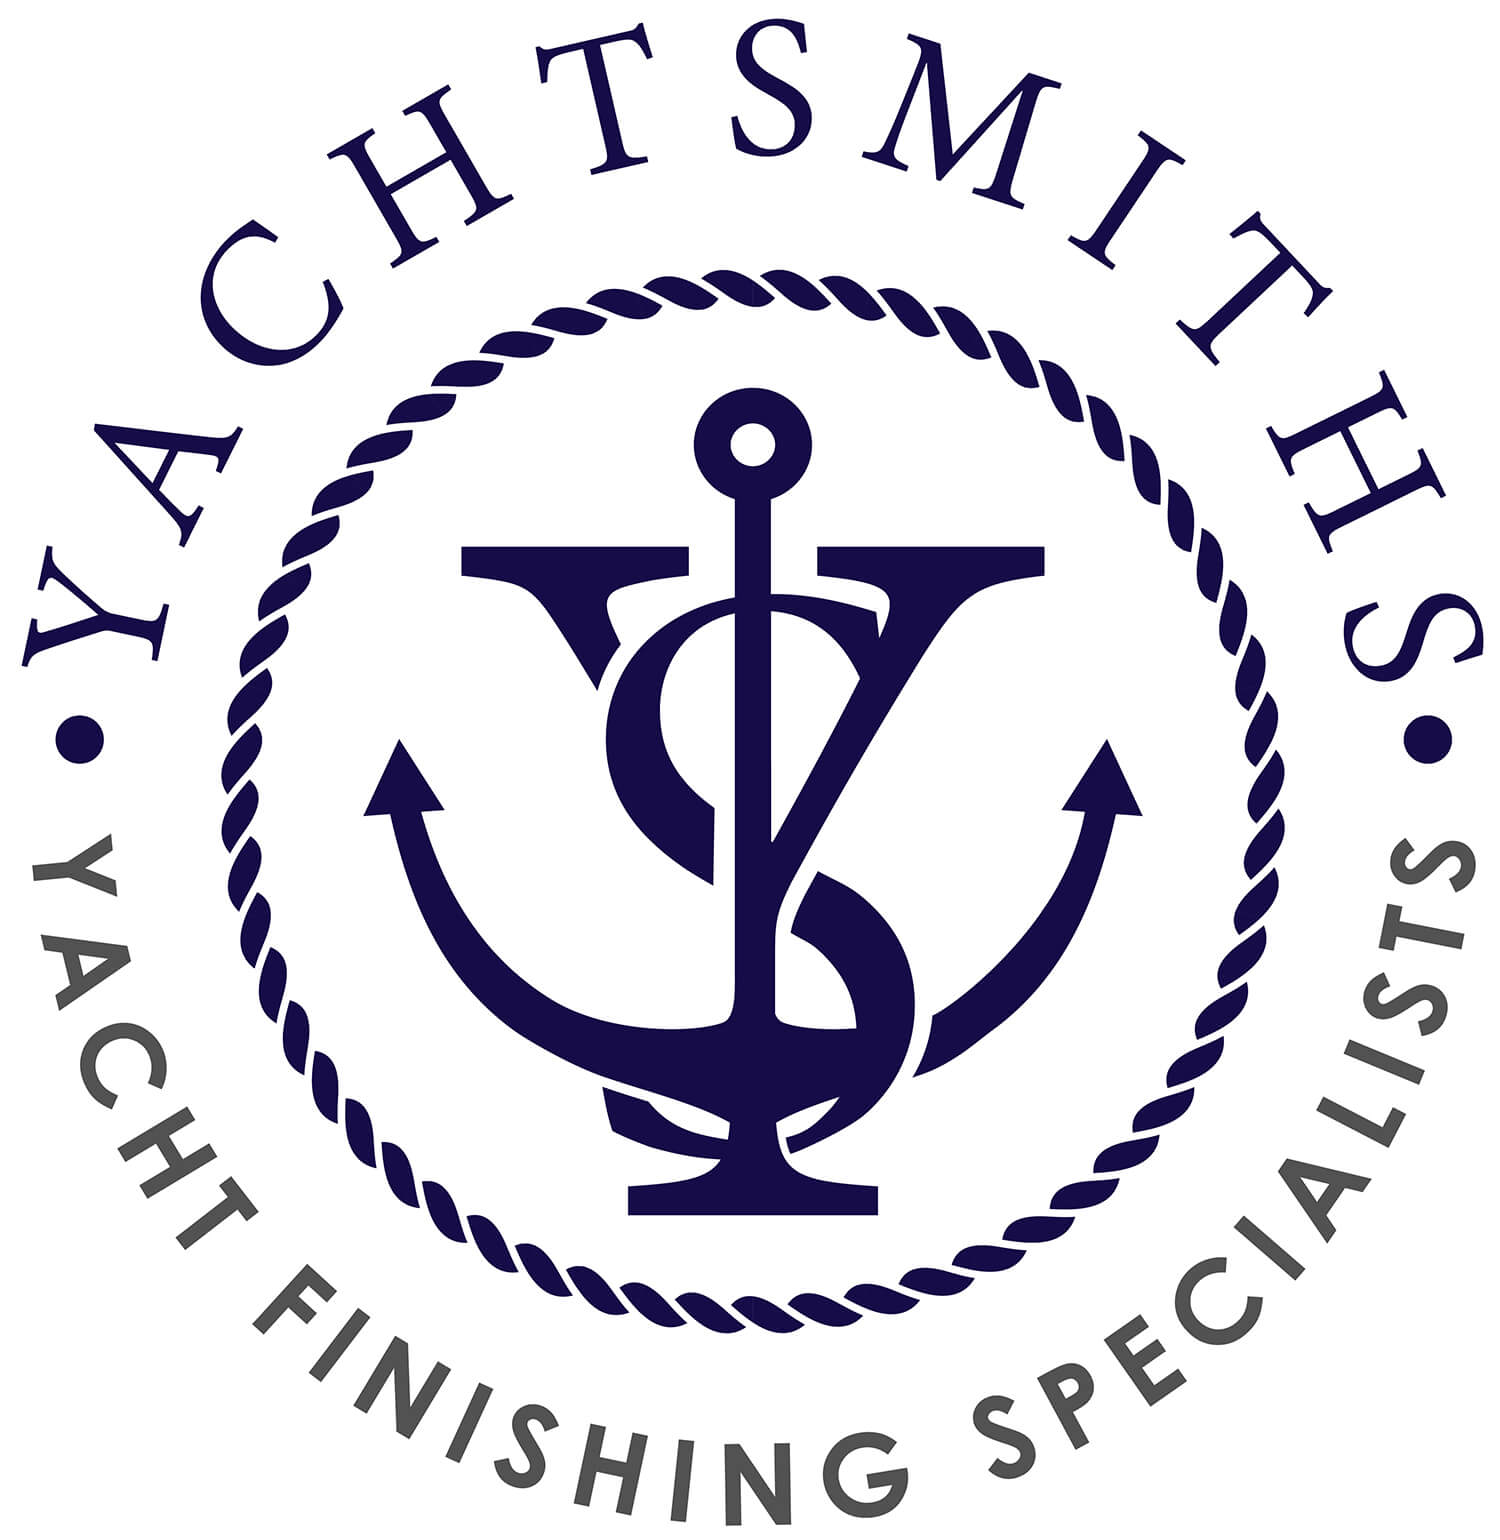 Yachtsmiths